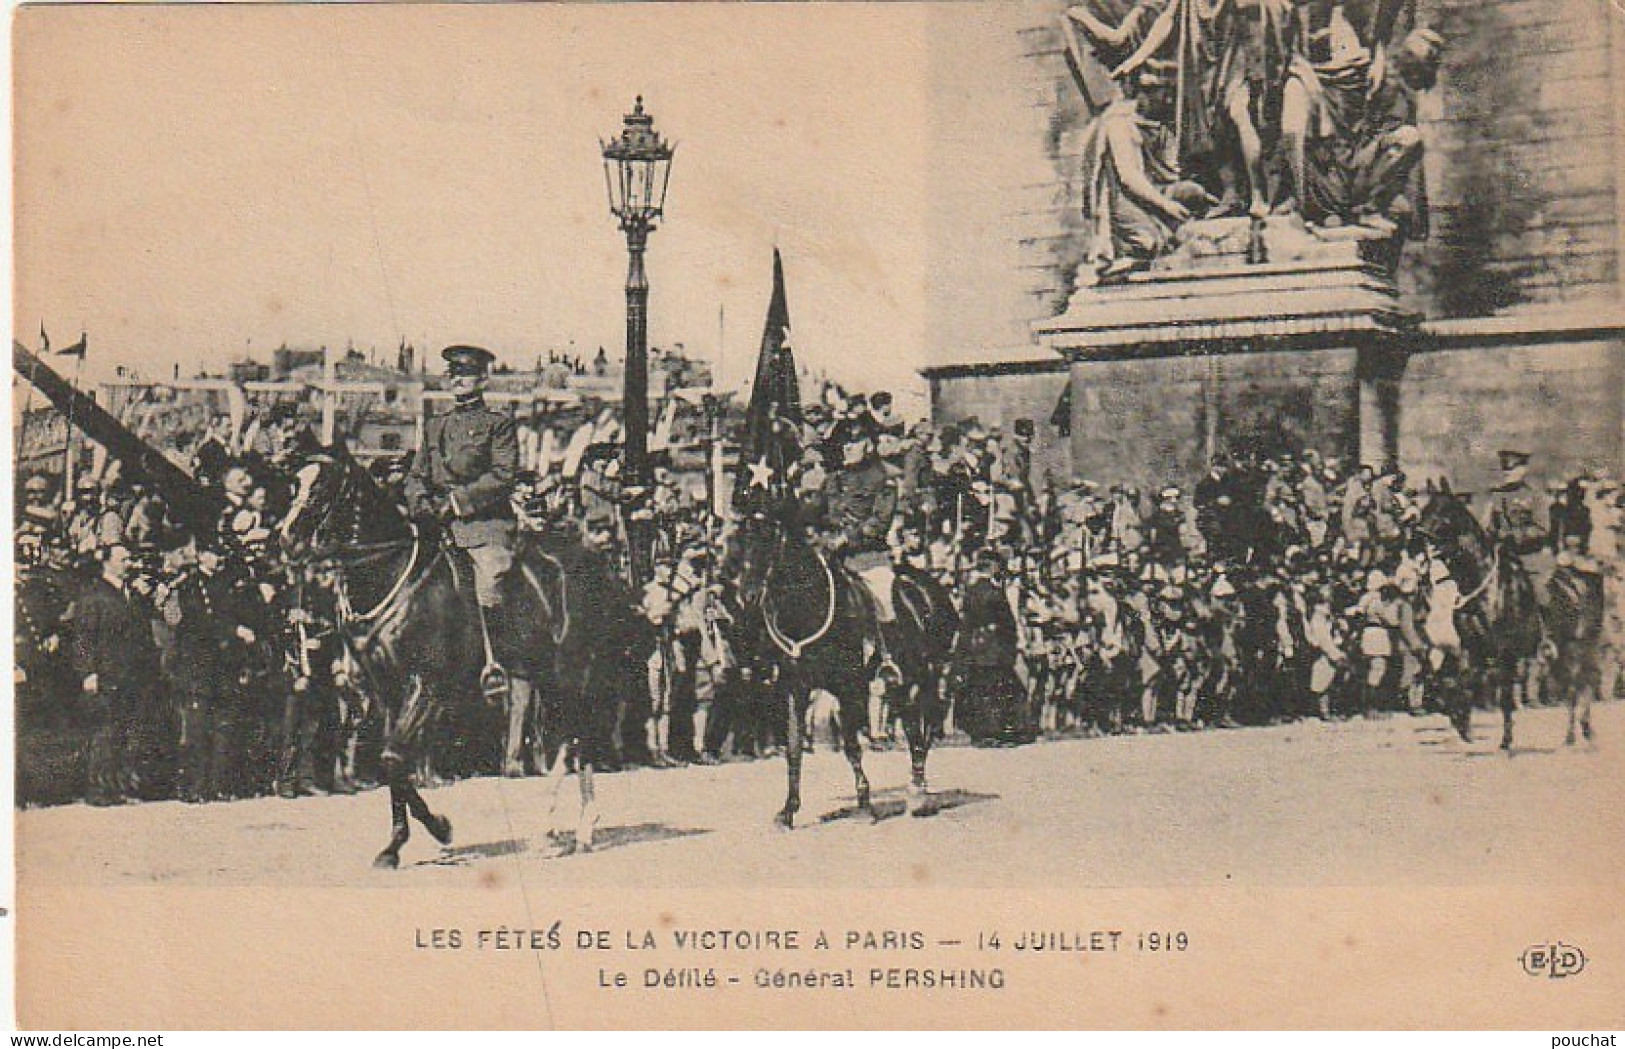 JA 2 - (75) PARIS - LES FETES DE LA VICTOIRE 1919 -  LE DEFILE - LE GENERAL PERSHING  - 2 SCANS - Konvolute, Lots, Sammlungen